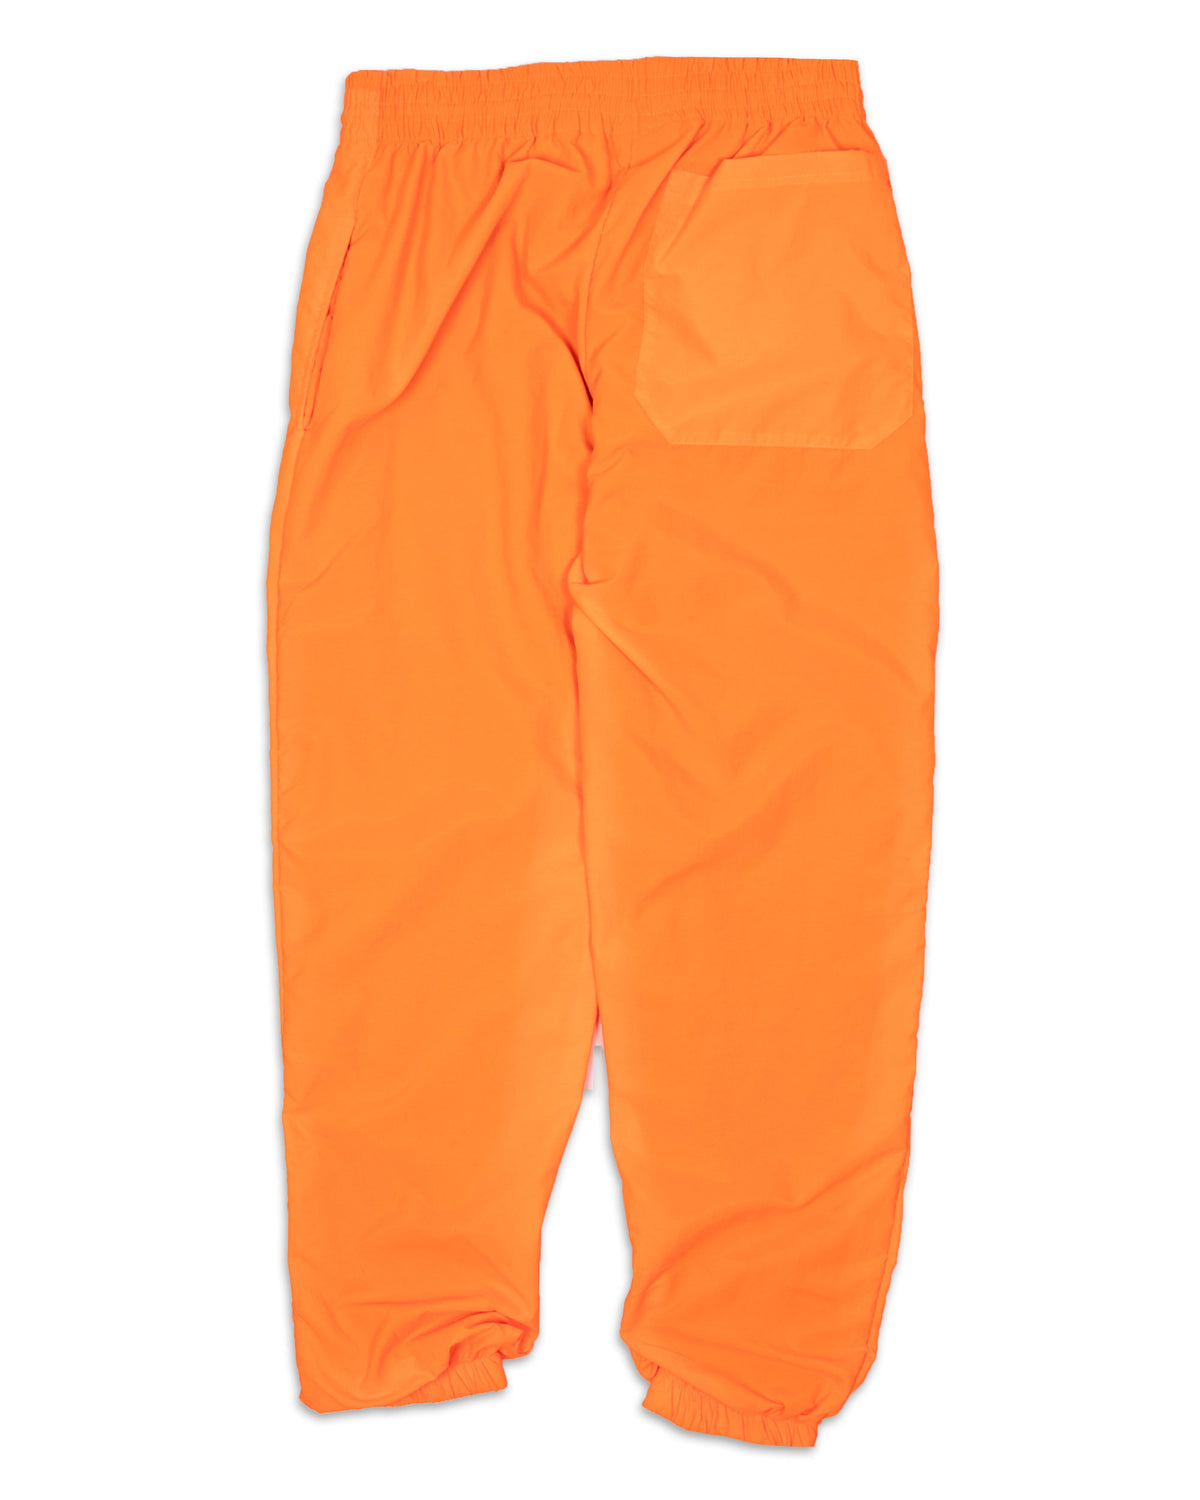 BHMG Nylon Pant 031315-Orange